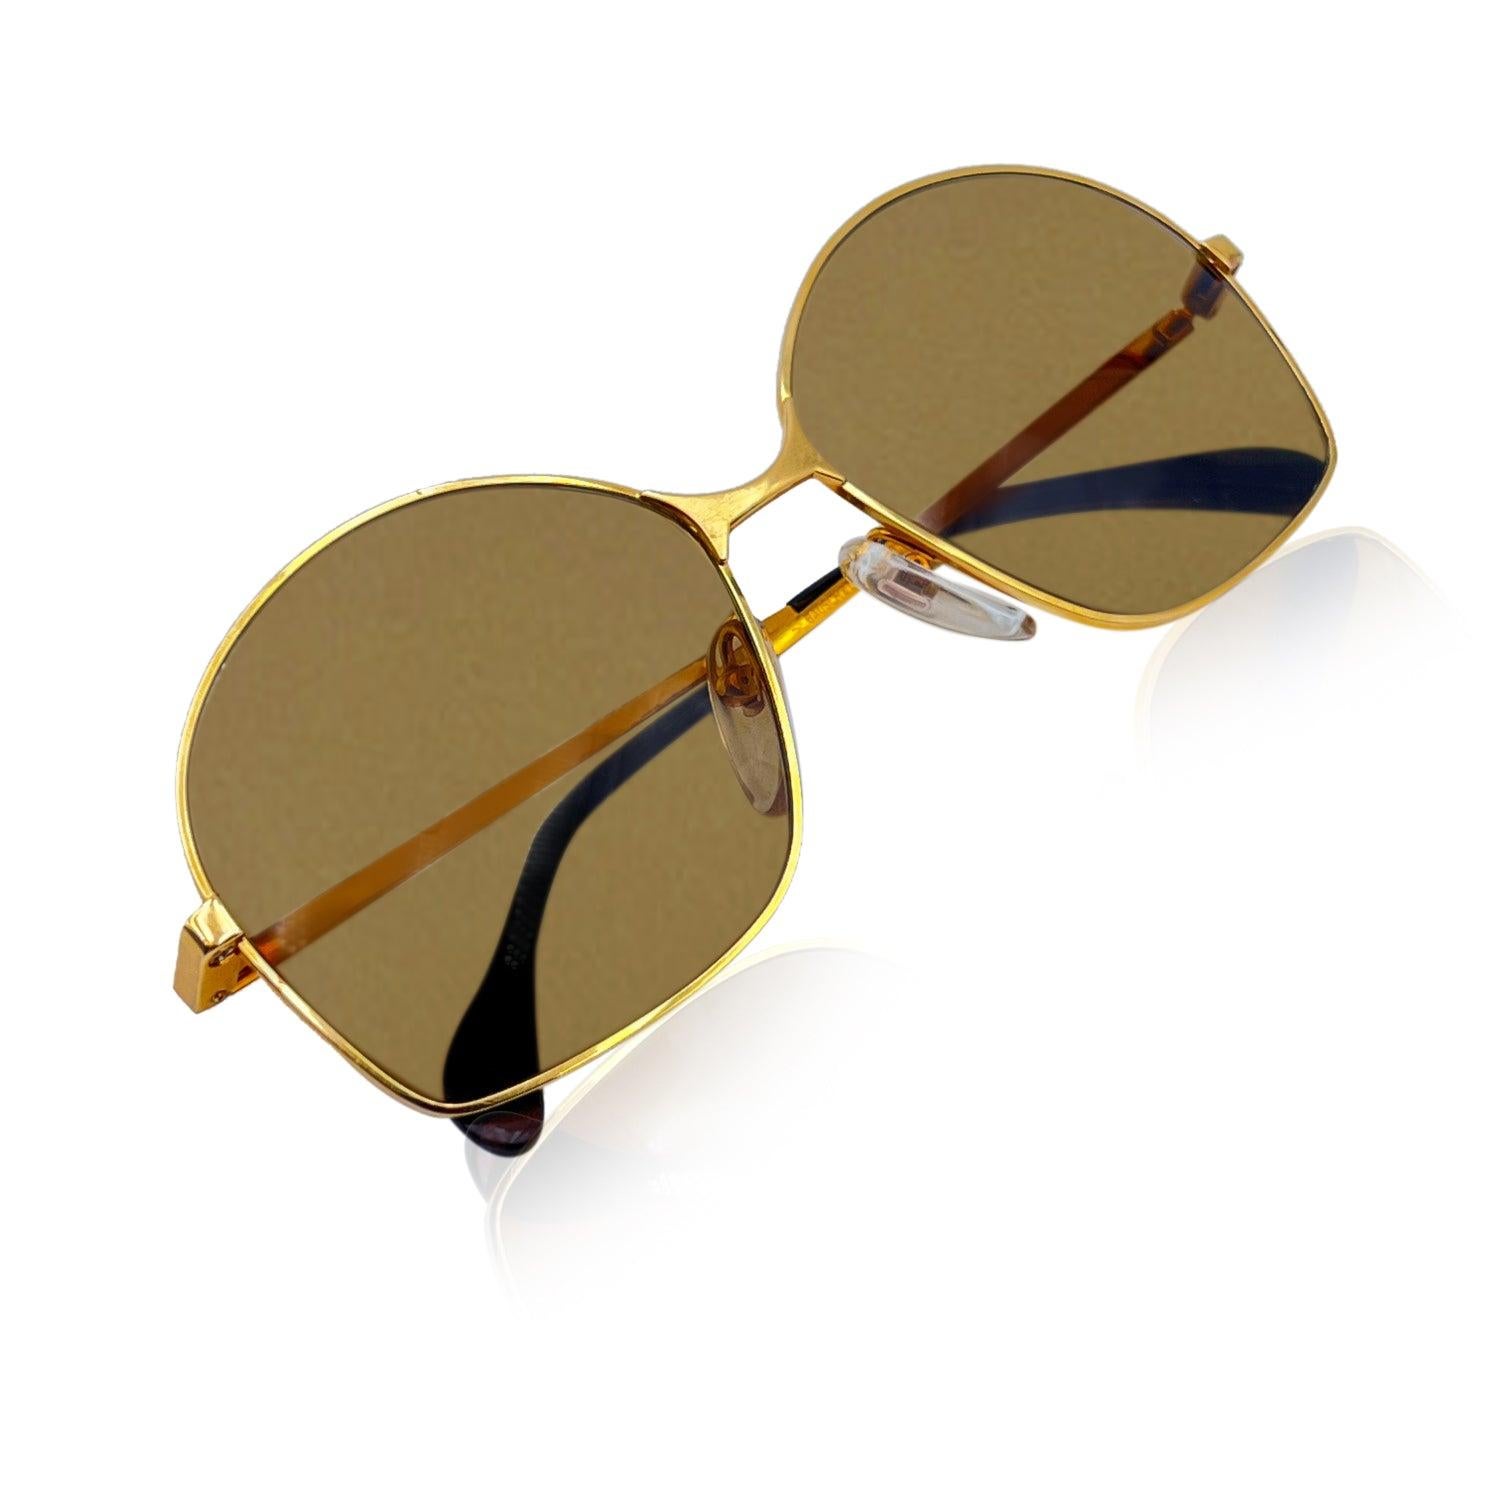 SEHR RAR - Neuwertige, quadratische Vintage-Sonnenbrille von Bausch & Lomb, 